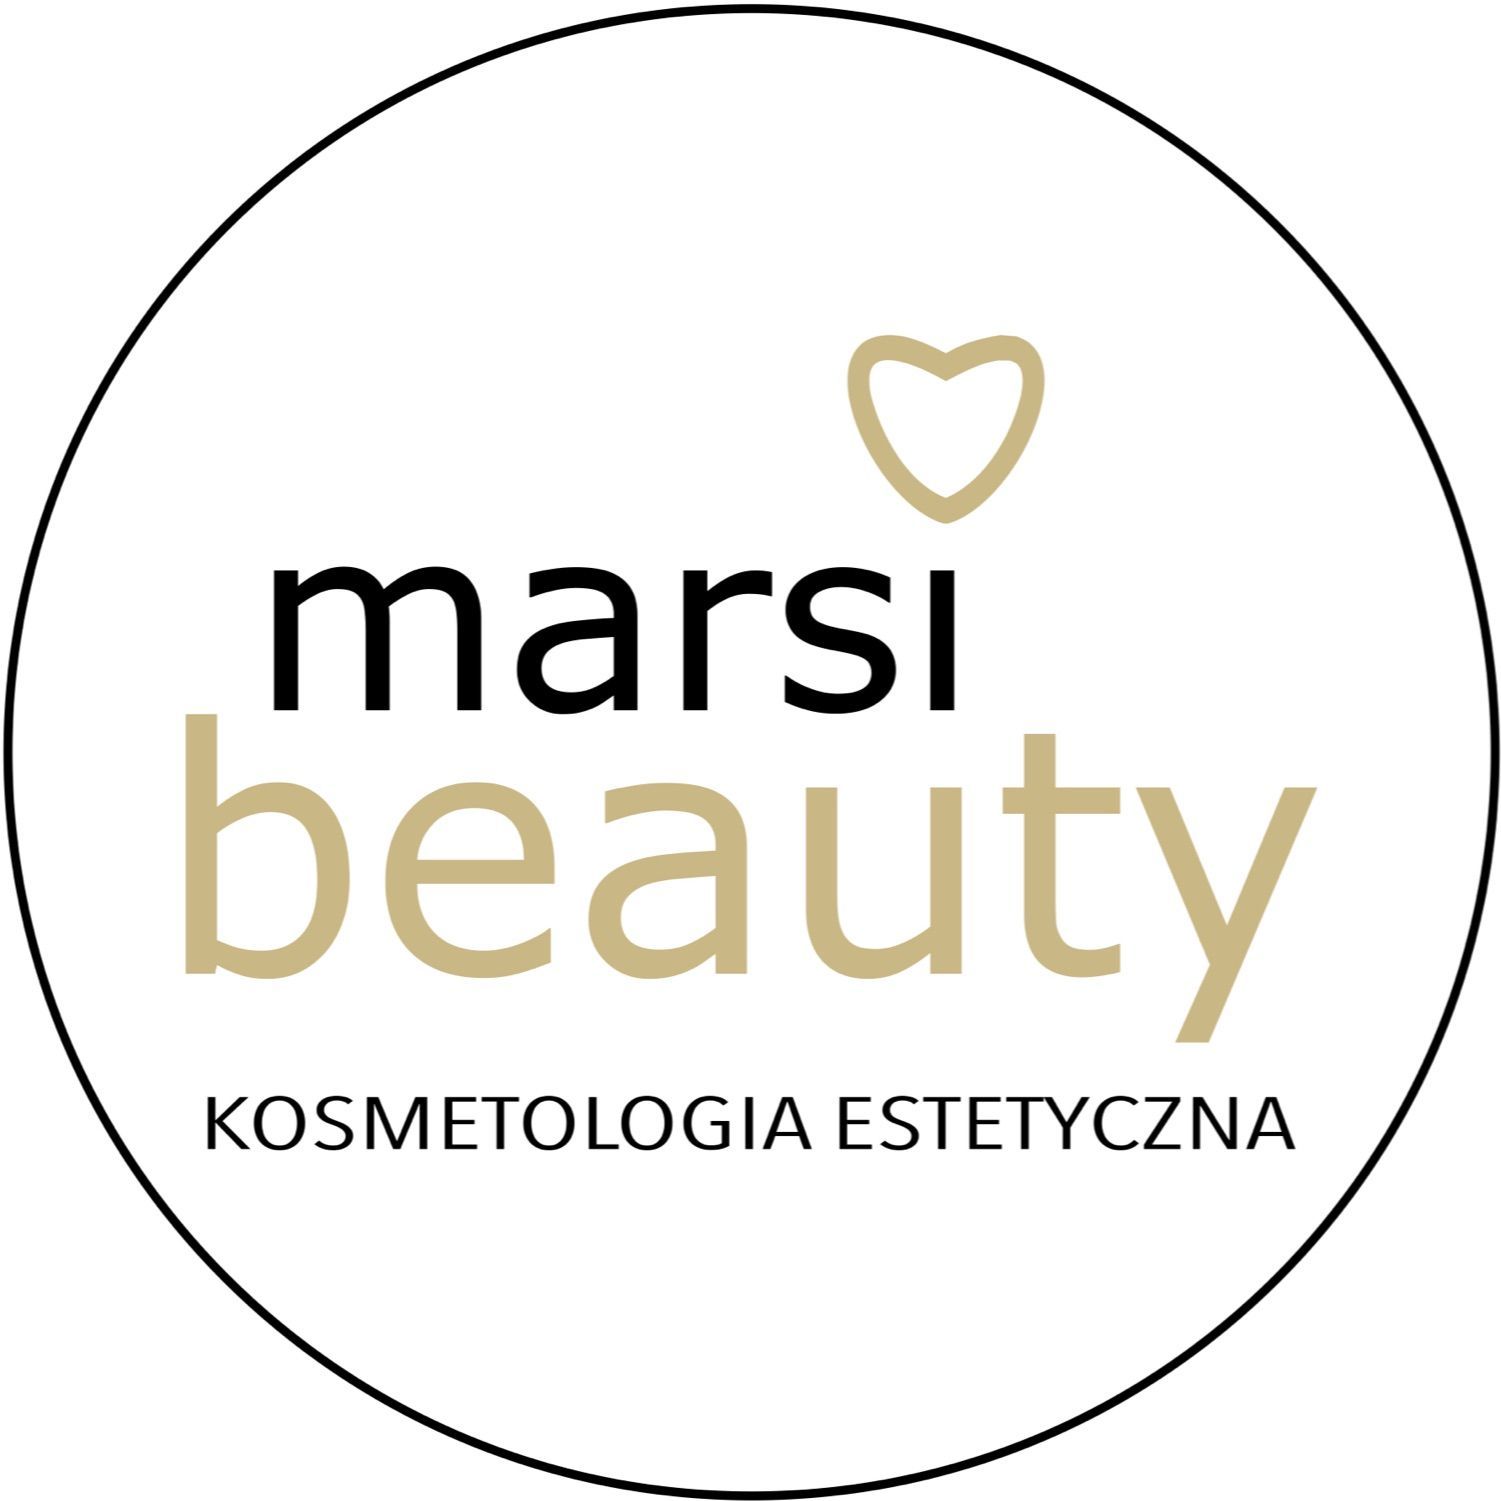 Marsi Beauty Kosmetologia Estetyczna, Tysiąclecia 39, 41-303, Dąbrowa Górnicza